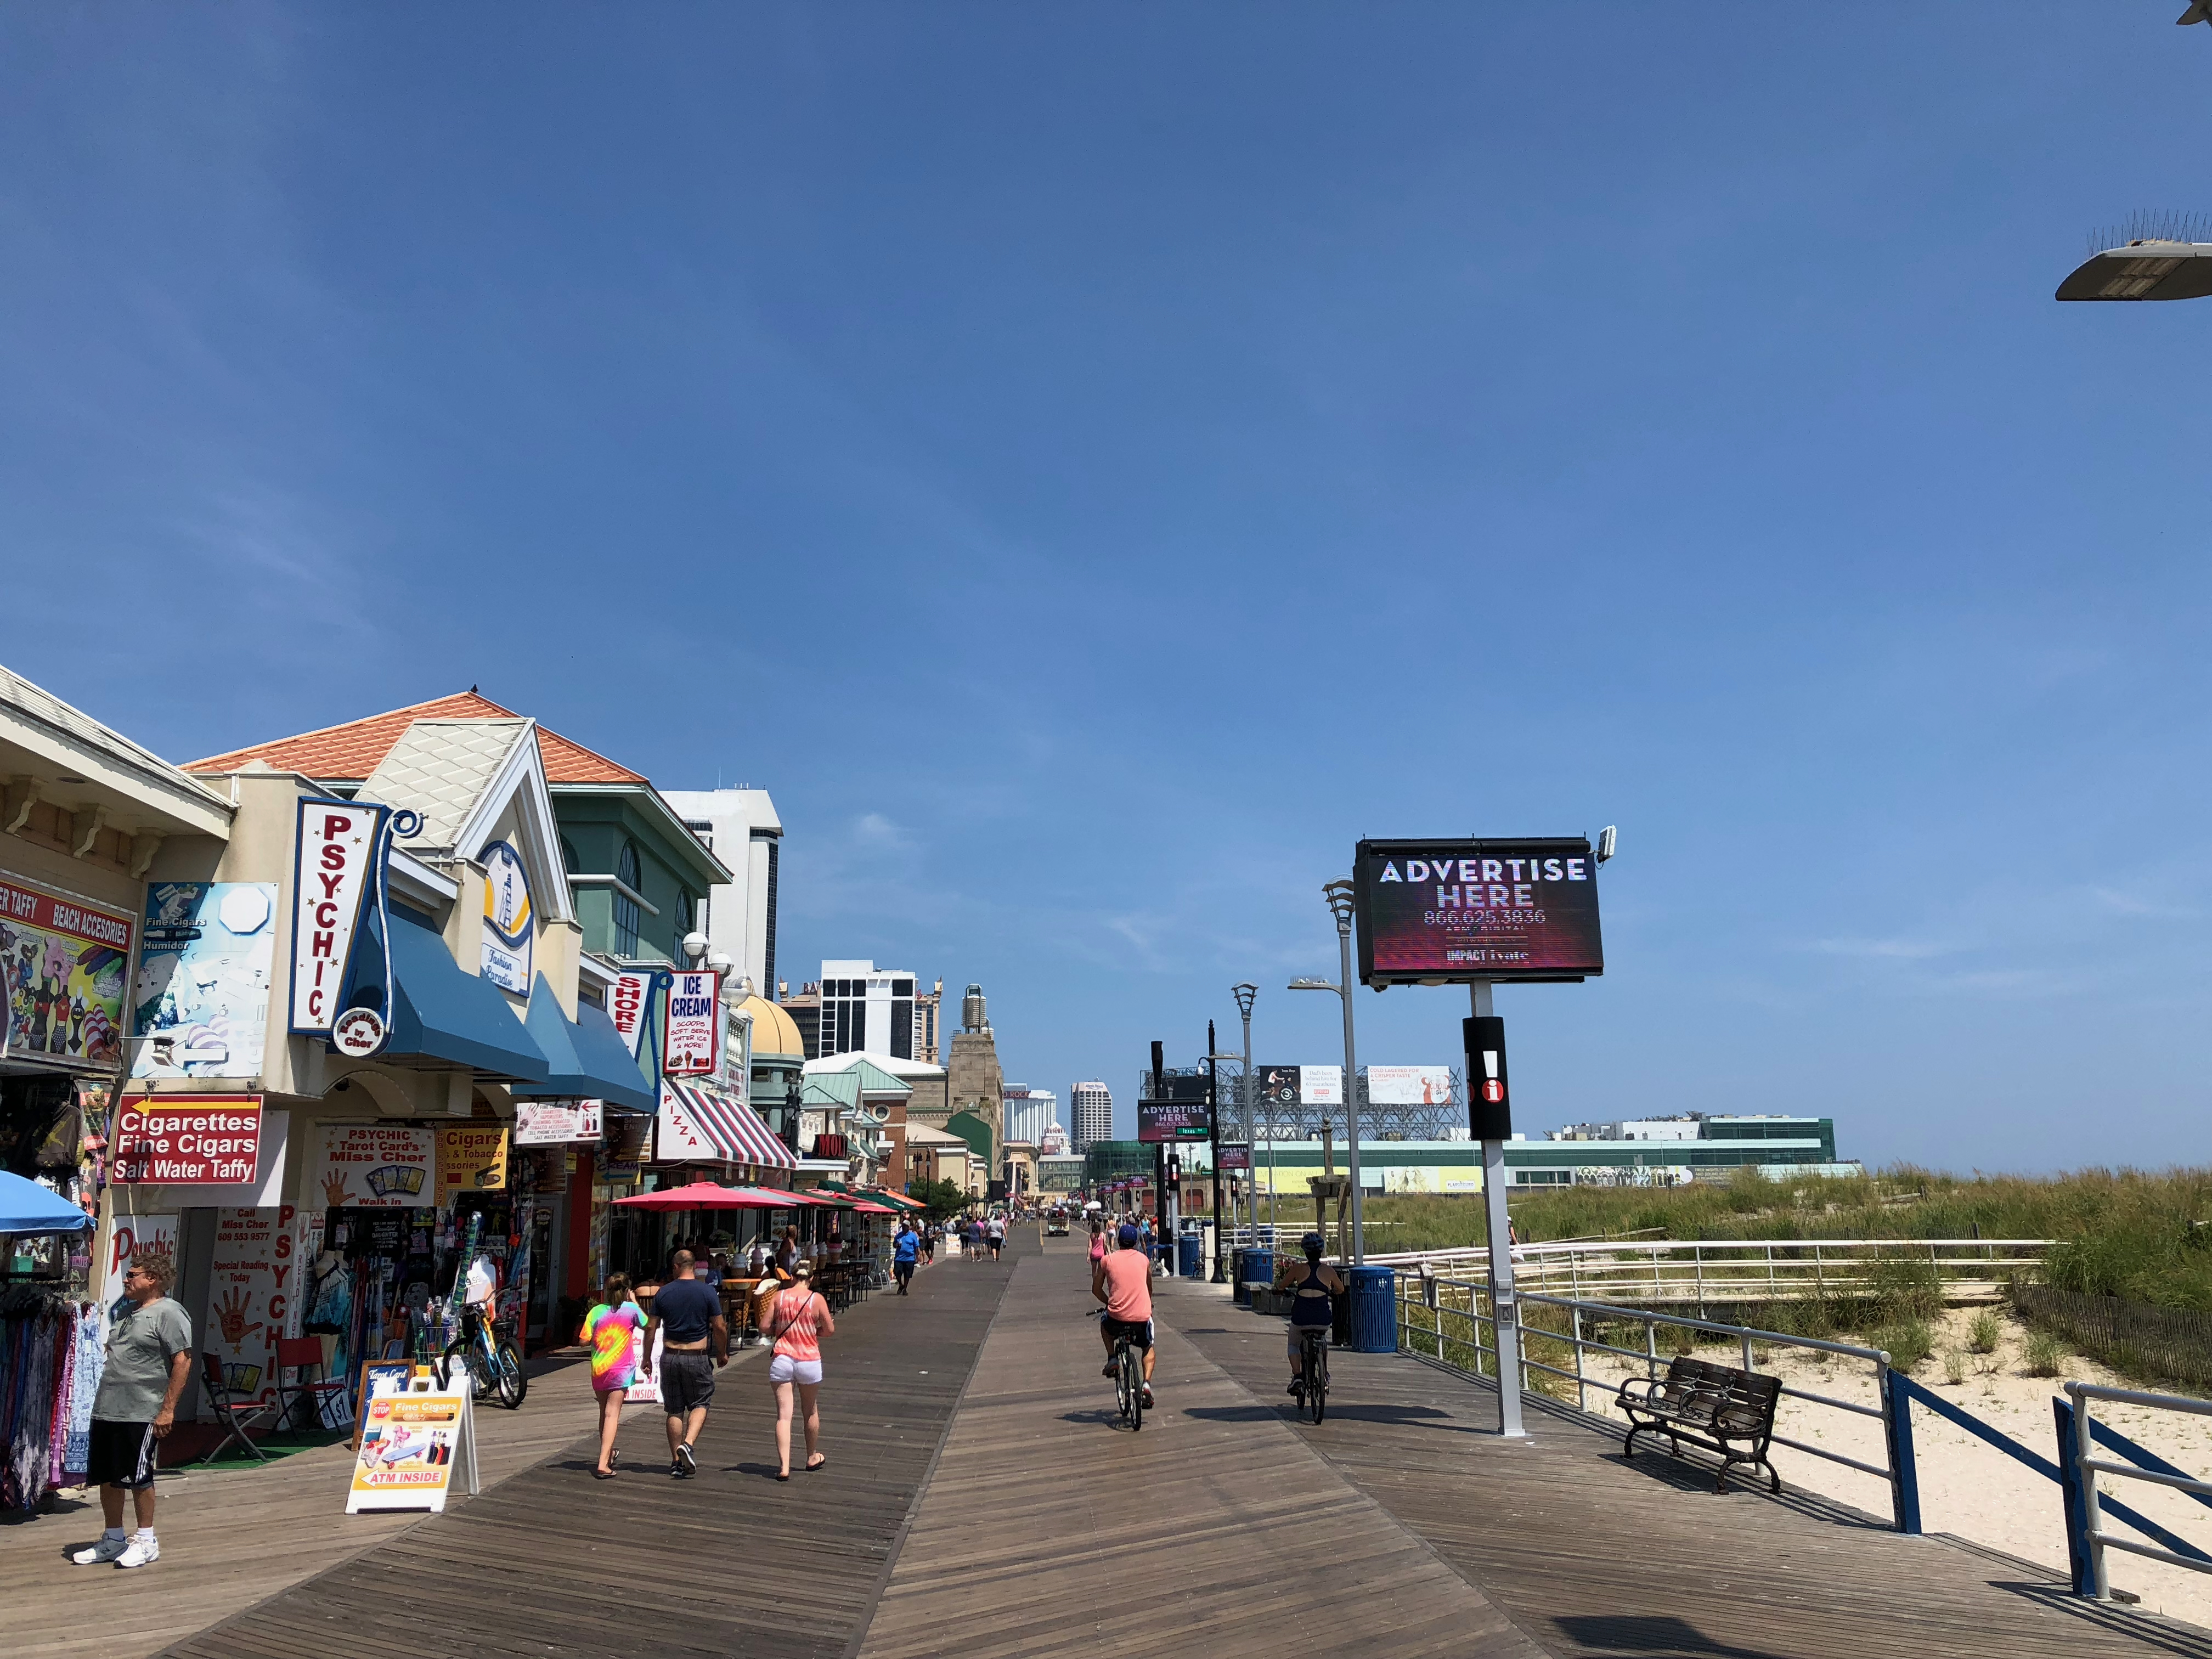 Strandpromenade in Atlantic City